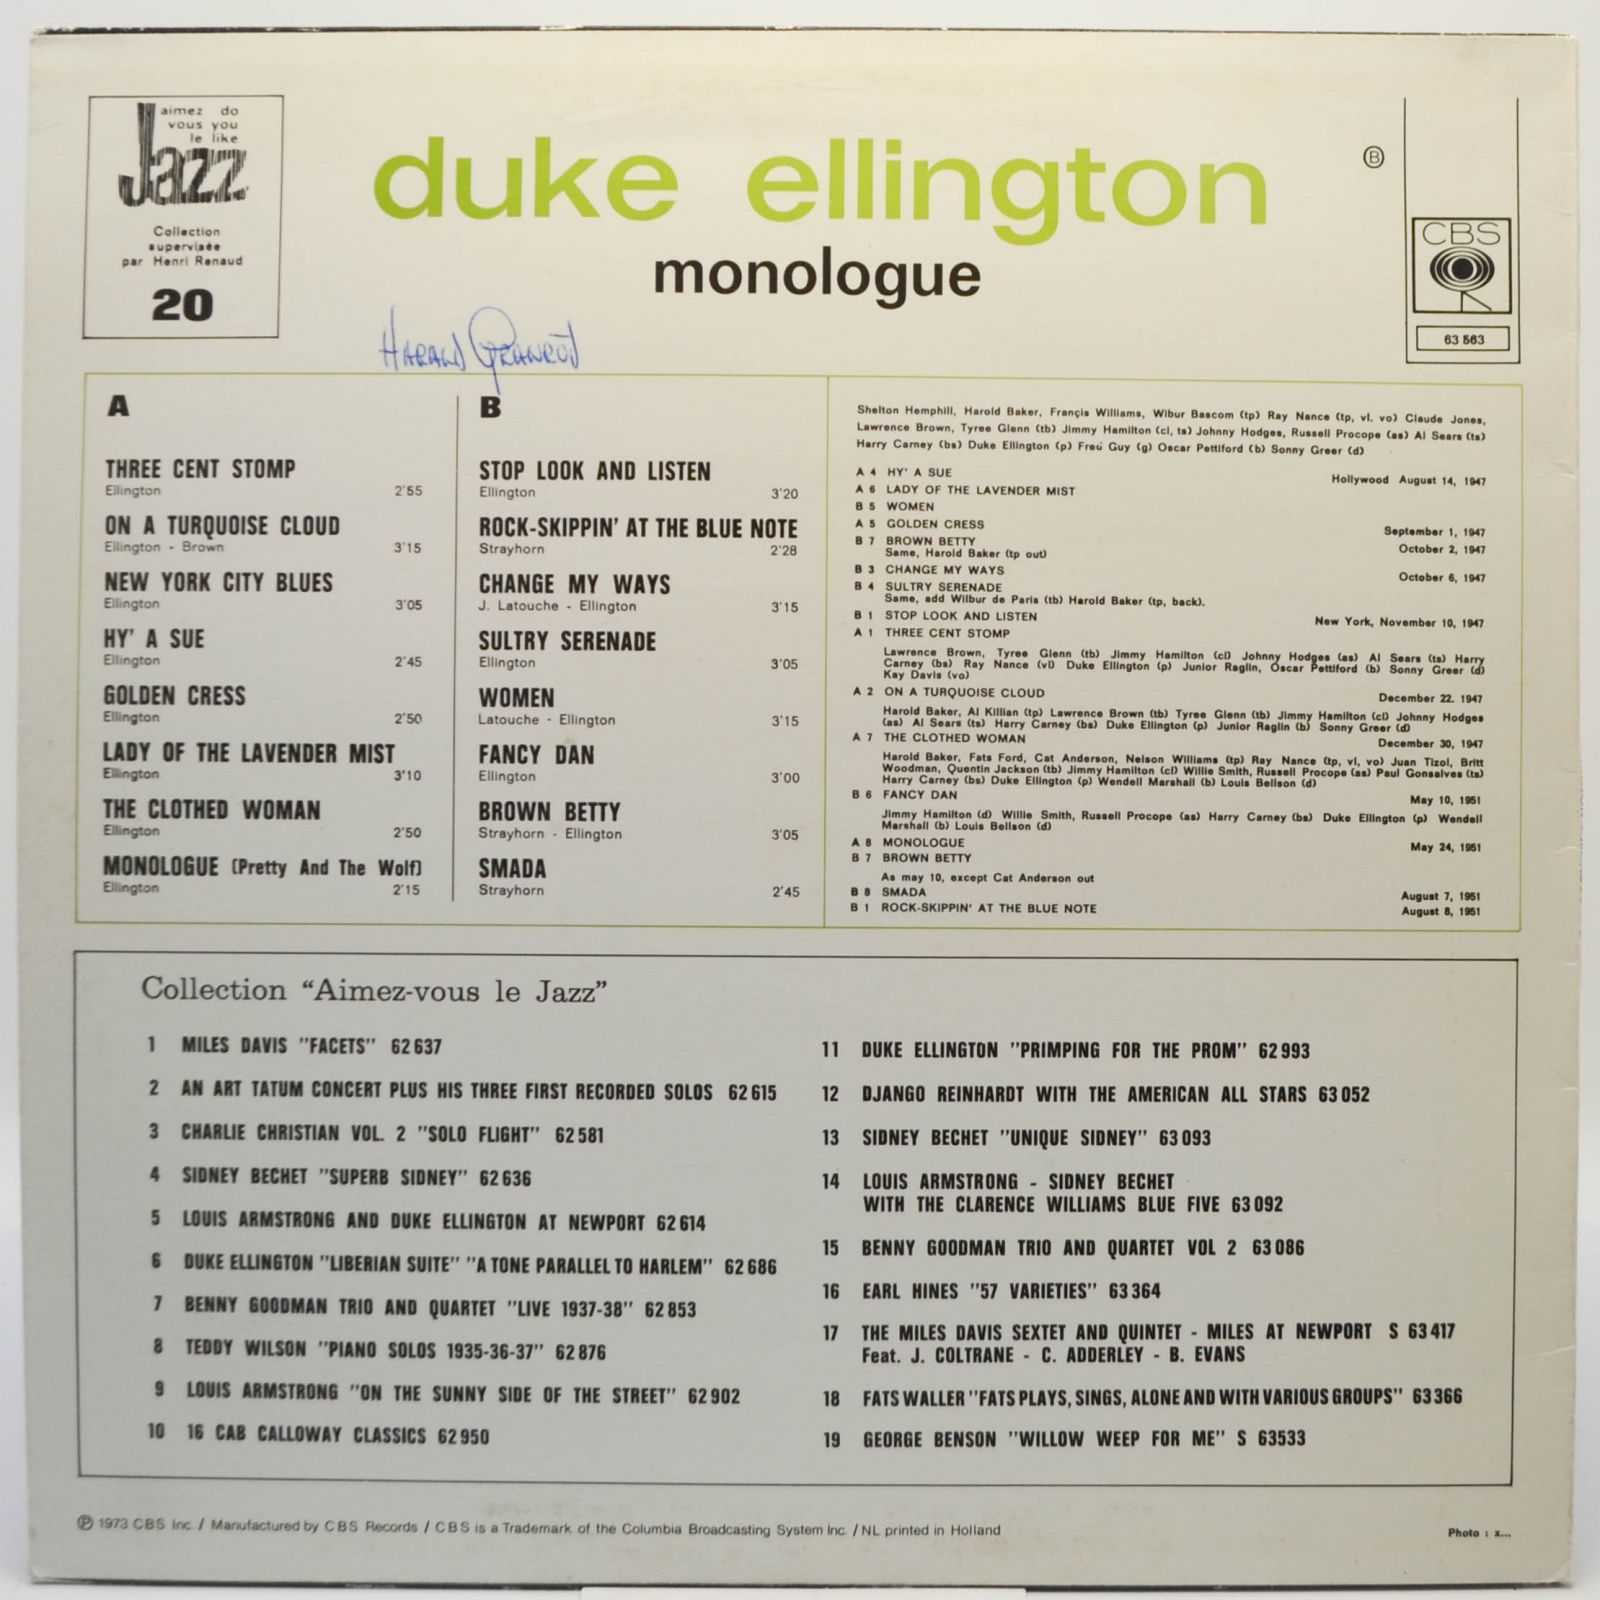 Duke Ellington — Monologue, 1973